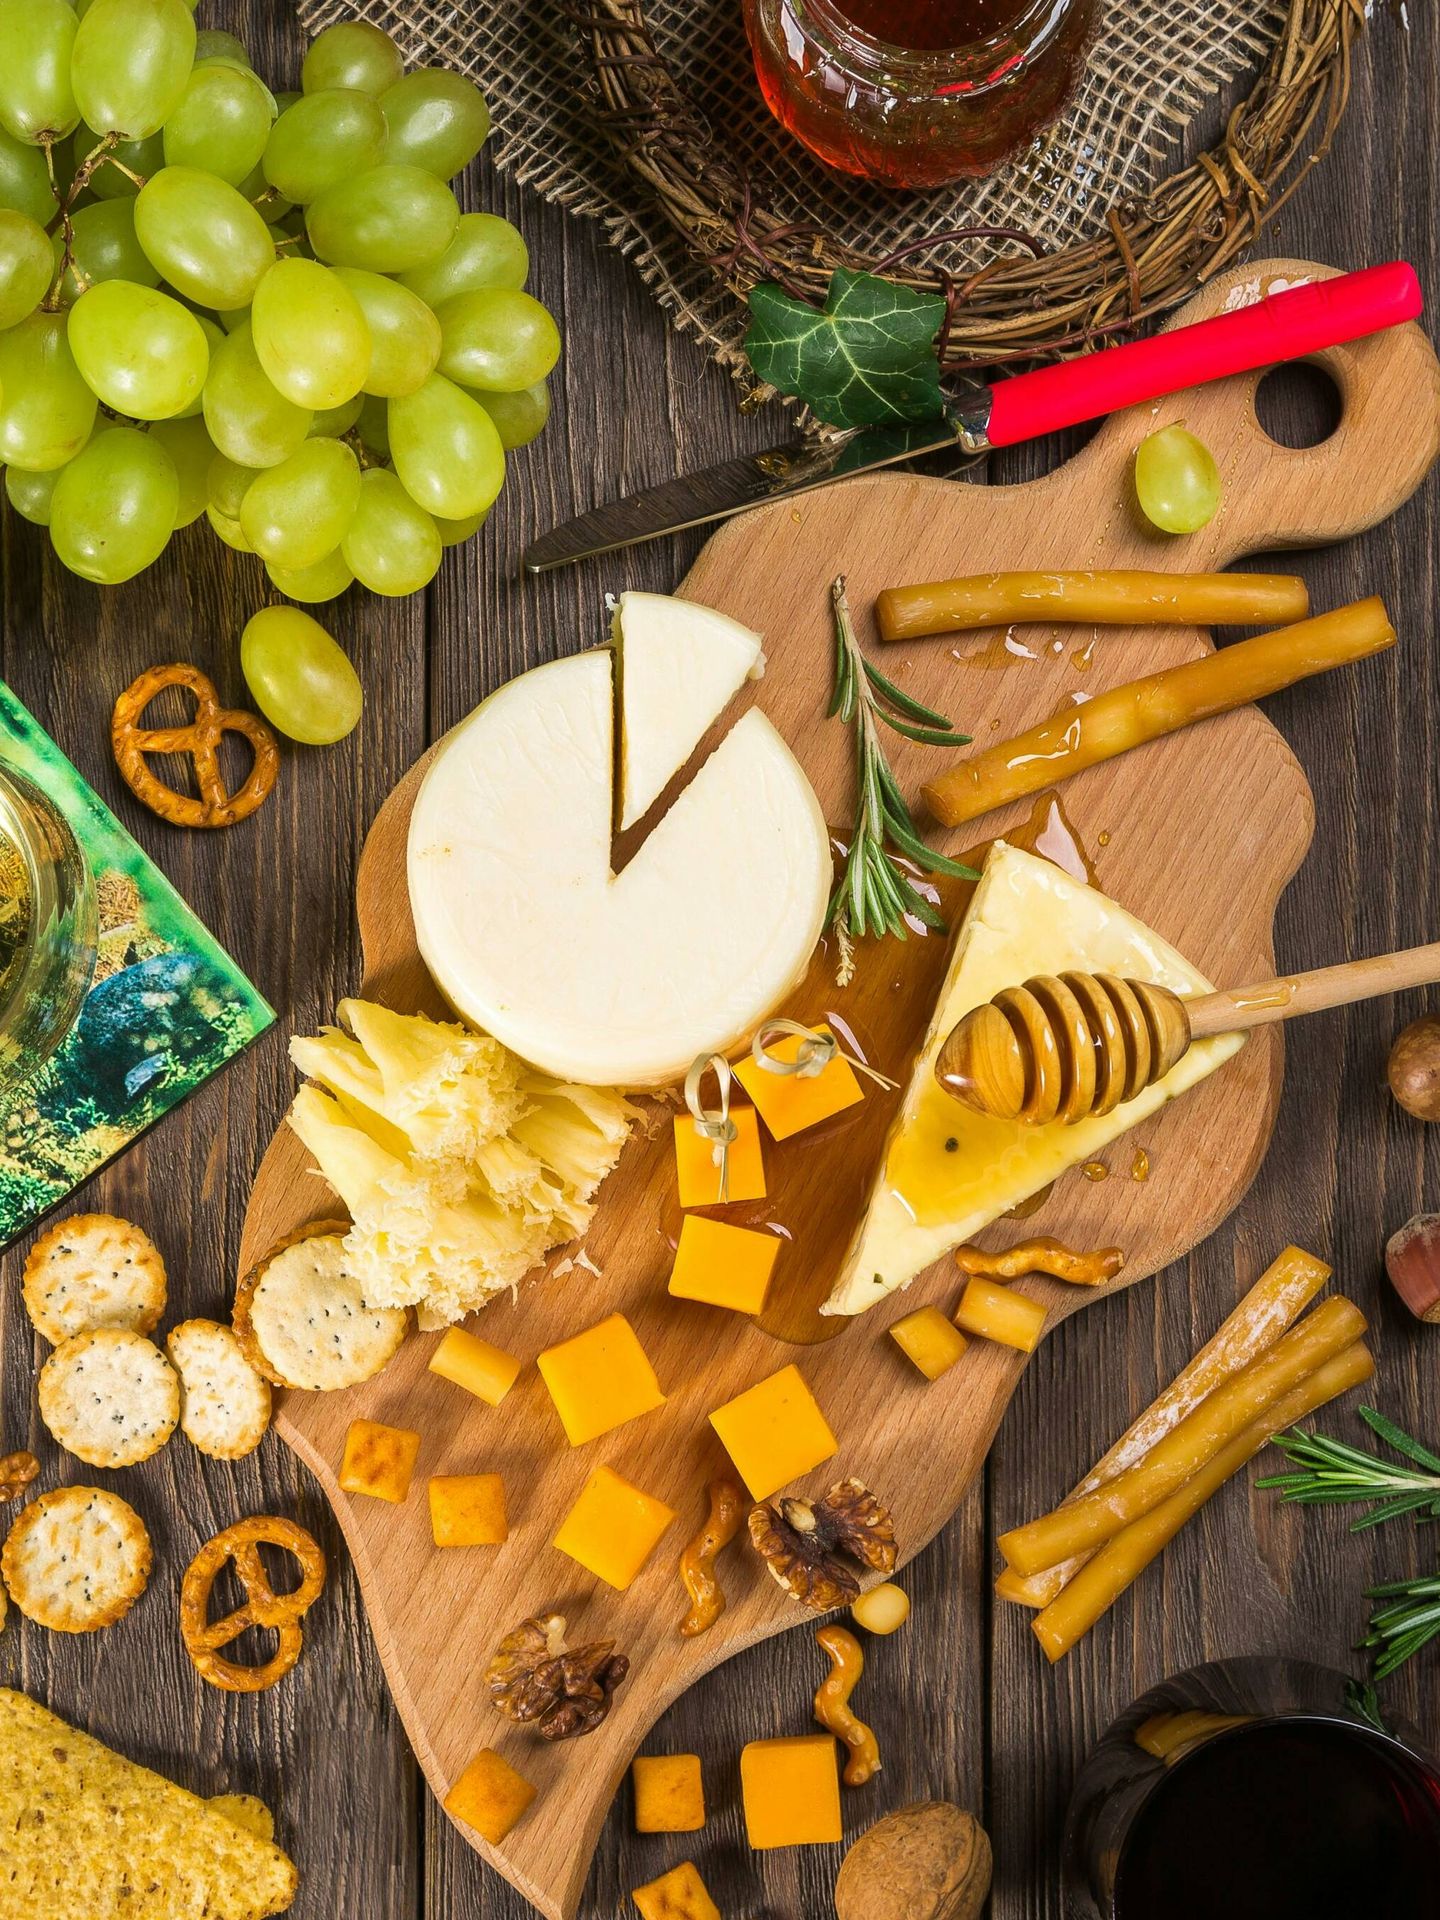 El queso es una buena fuente de proteínas. (Pexels/Pixabay)